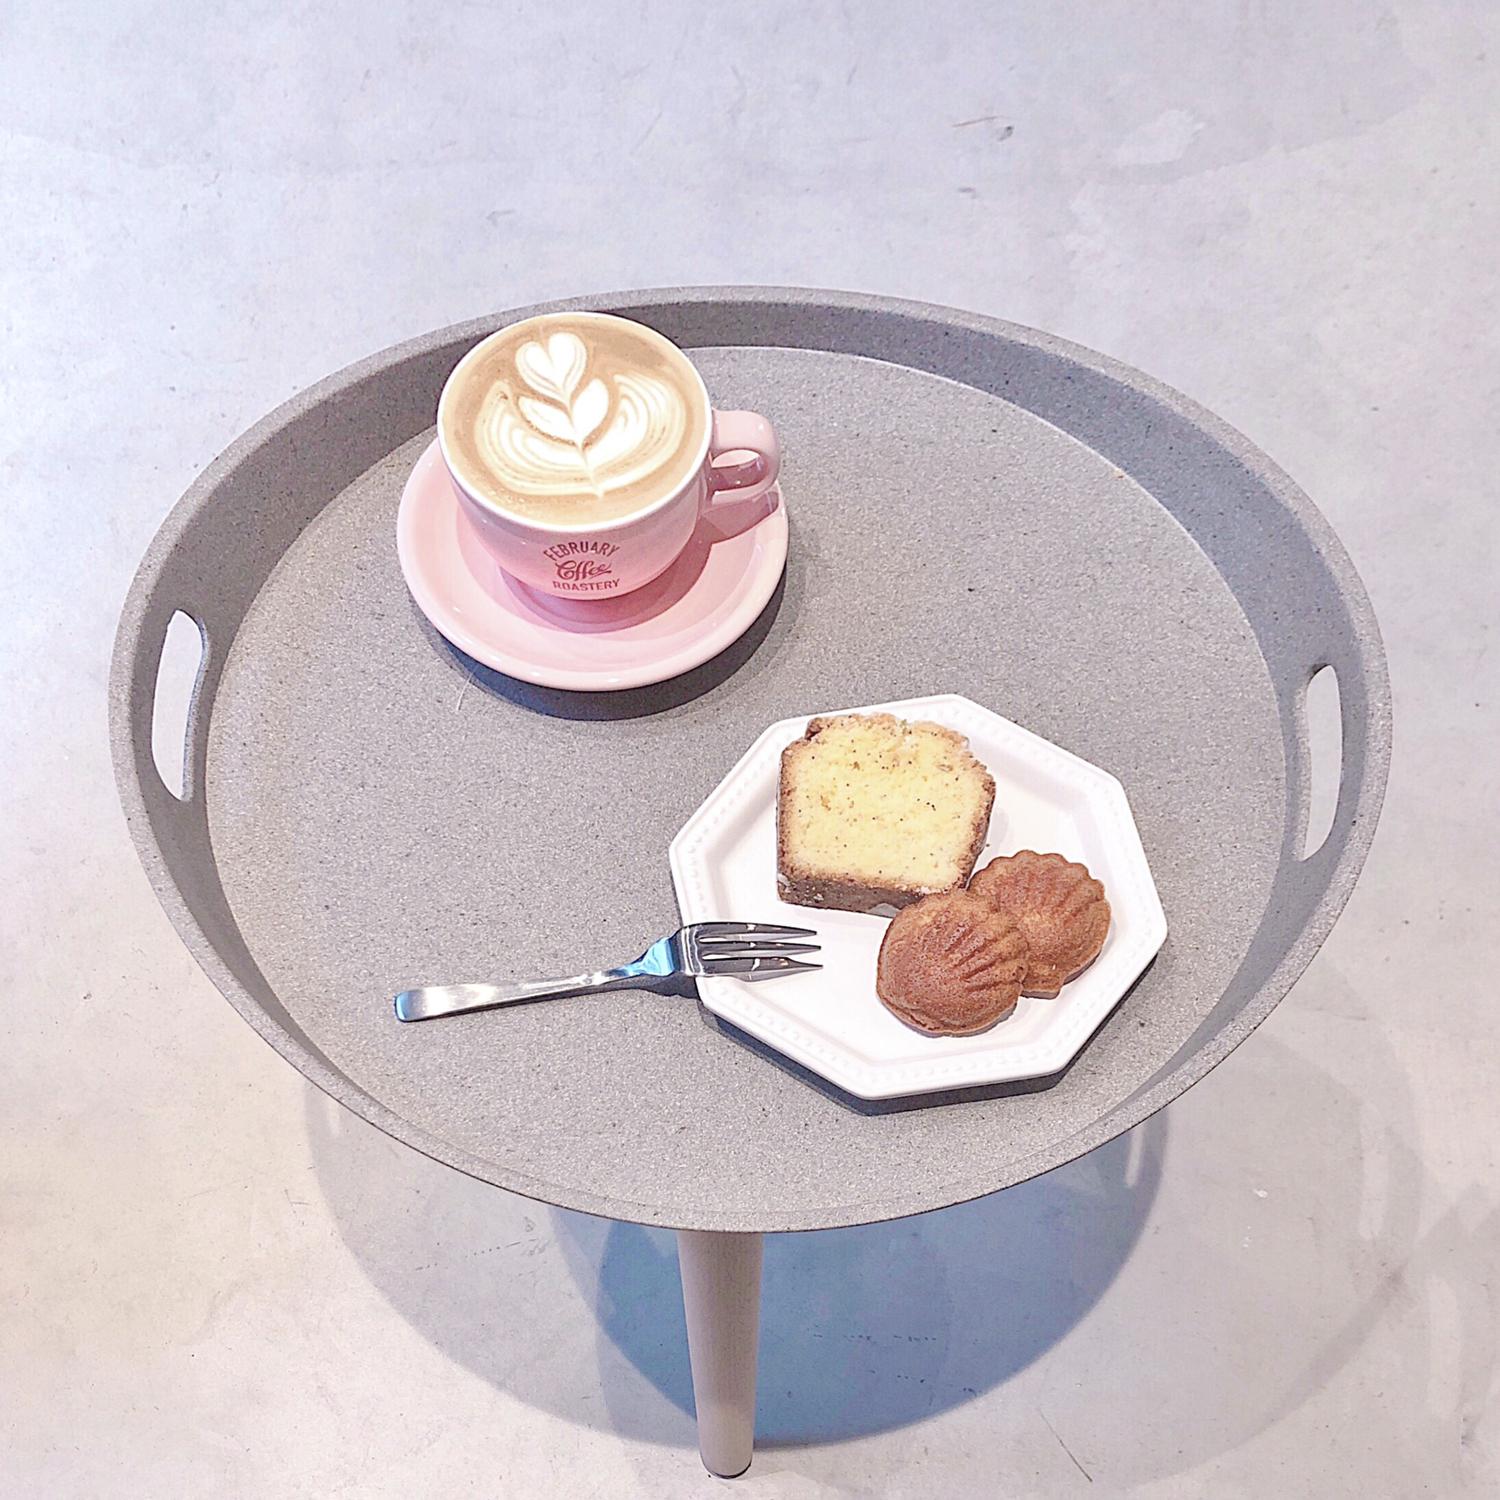 ピンクの焙煎機が映え 6 4オープンの浅草 February Coffee Roastery Yu カフェ男子が投稿したフォトブック Sharee